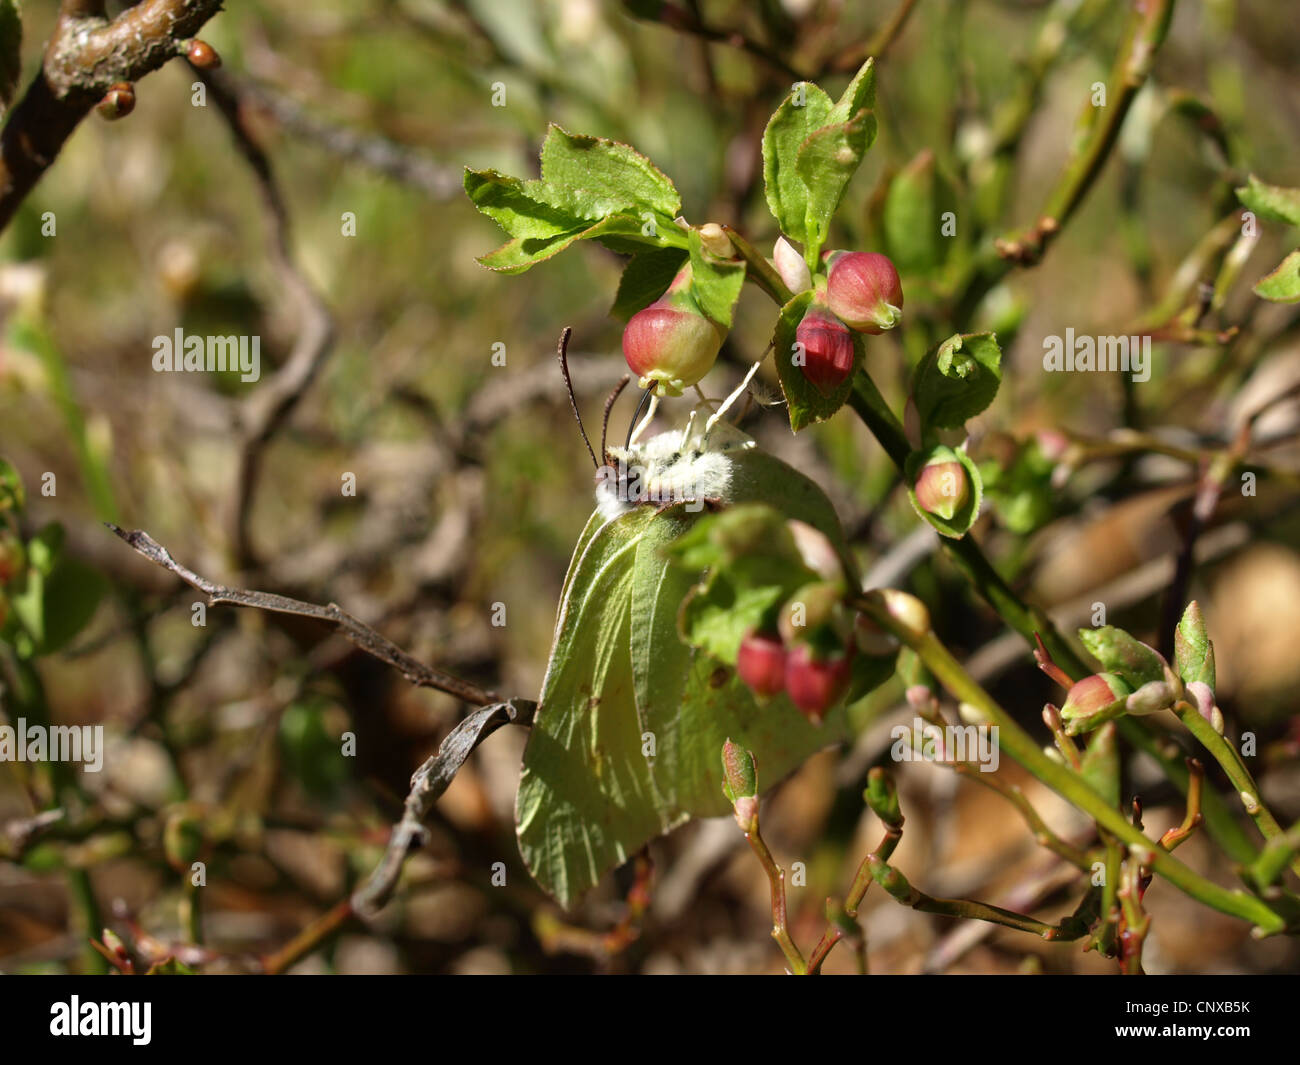 Common Brimstone on a blueberry bush in spring / Gonepteryx rhamni / Zitronenfalter an Heidelbeerblüten im Frühling Stock Photo